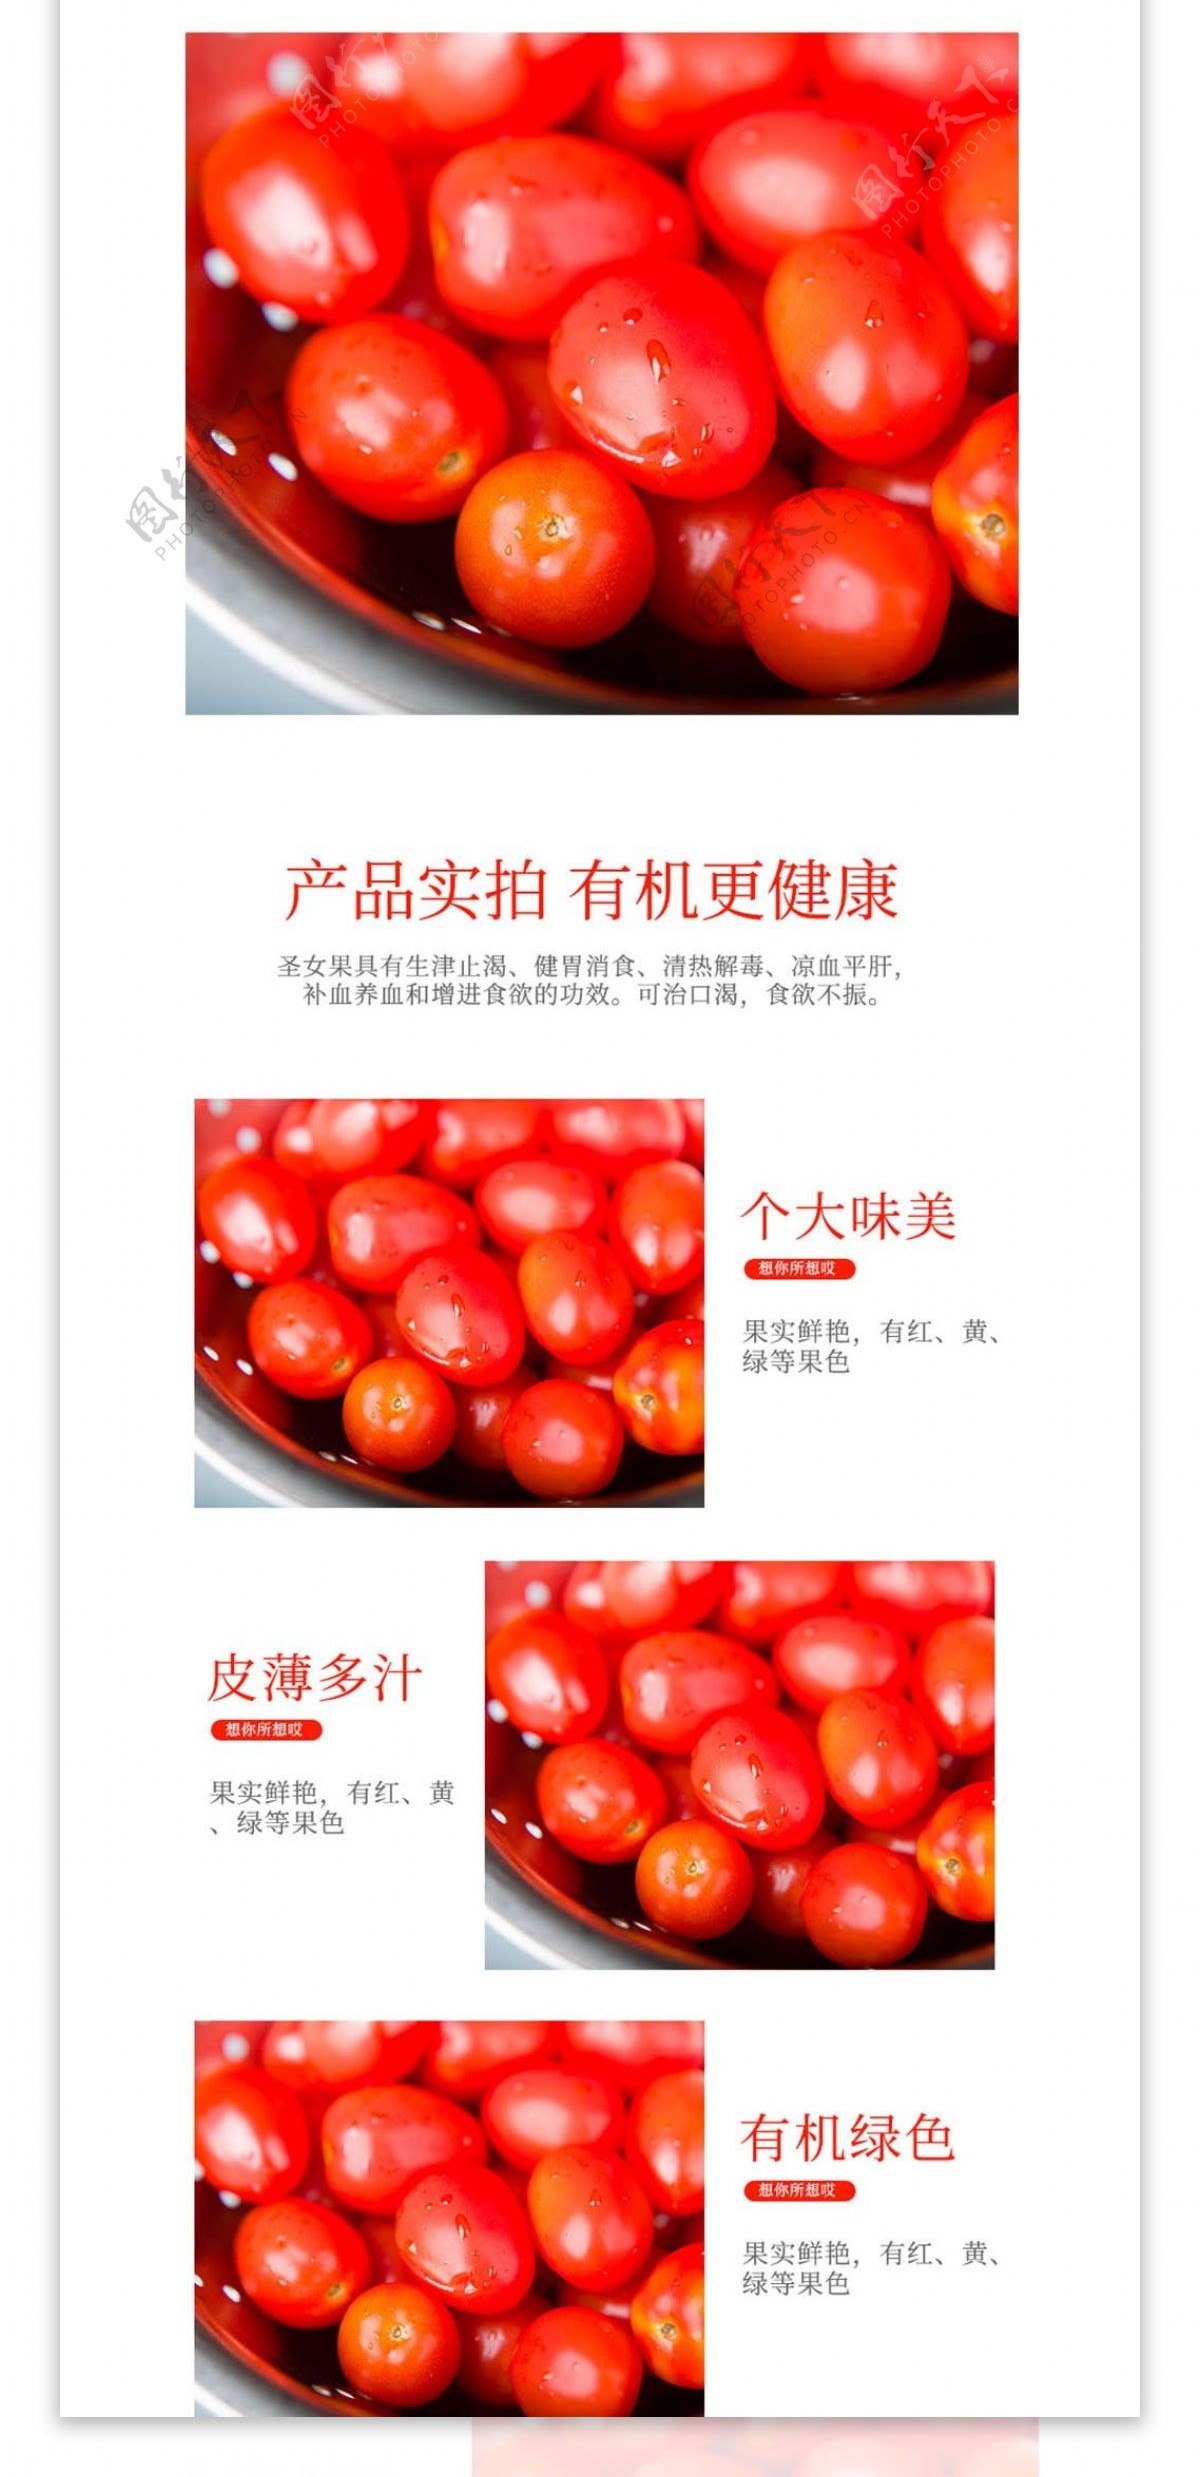 电商淘宝水果生鲜圣女果番茄食品蔬菜详情页